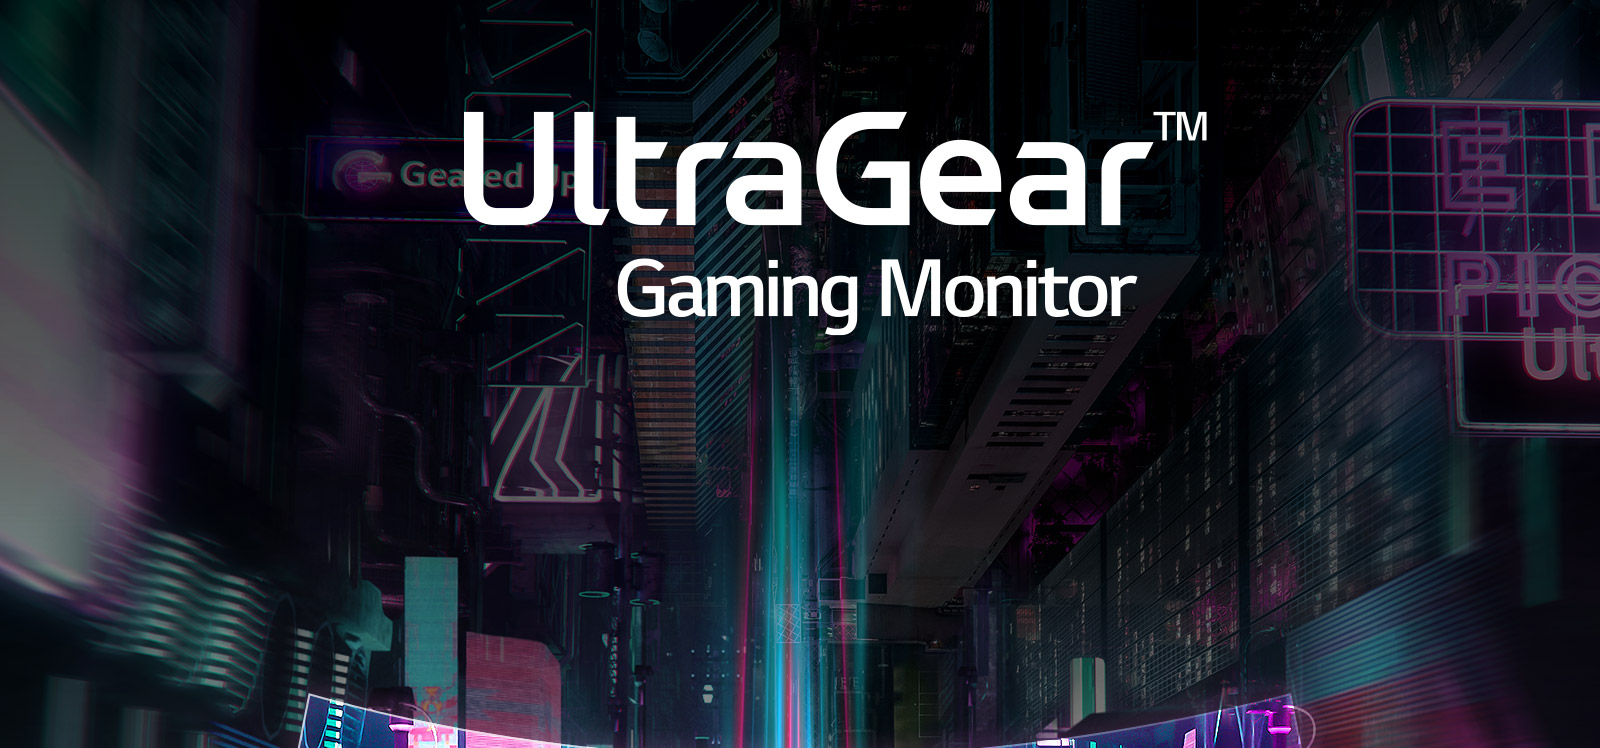 MNT-UltraGear-2019-01-1-Victory-Desktop